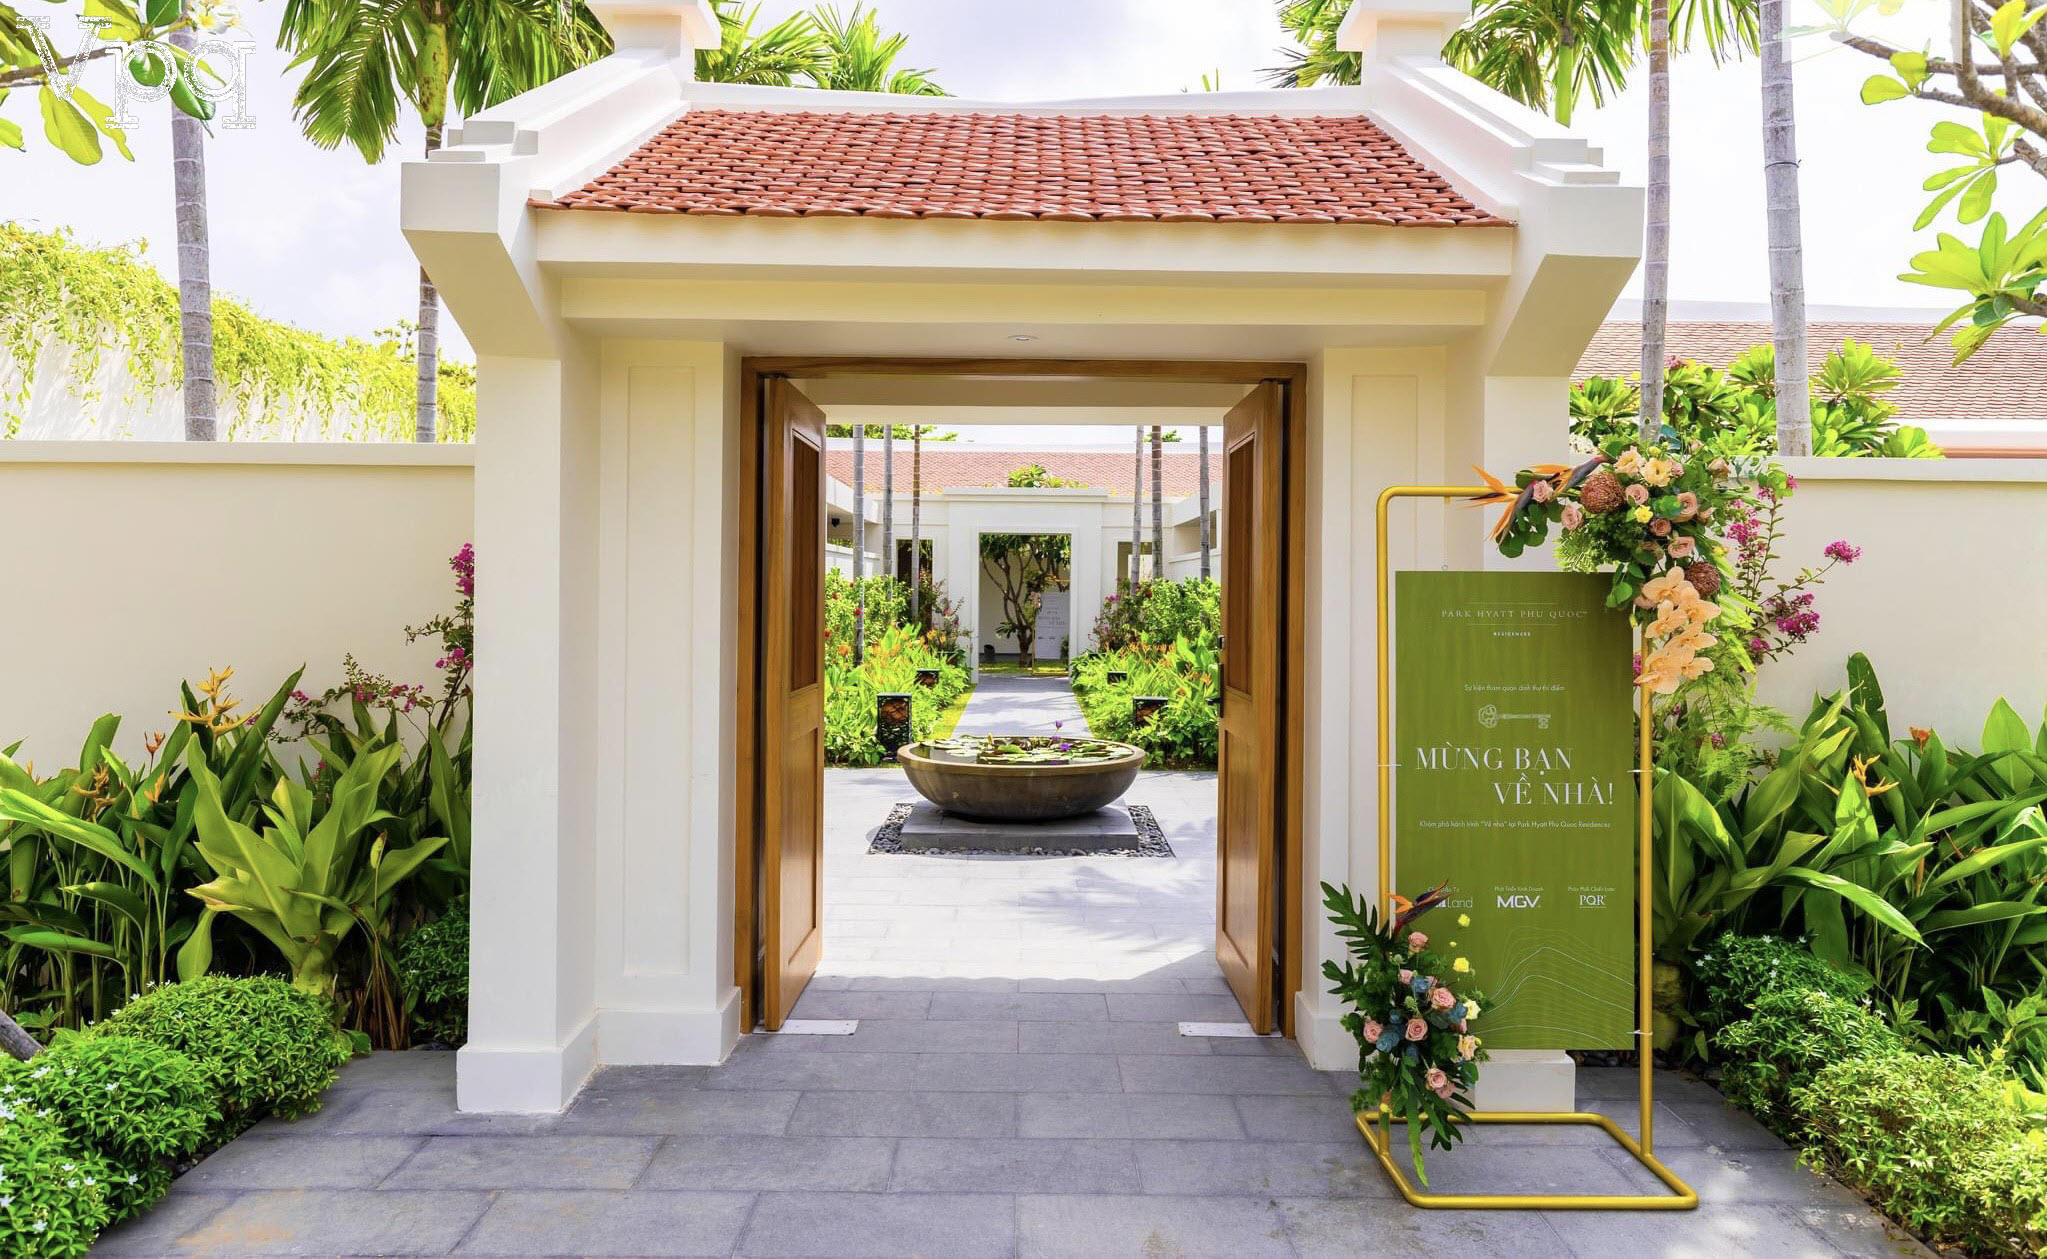 Park Hyatt Phu Quoc Residences - Mừng bạn về nhà